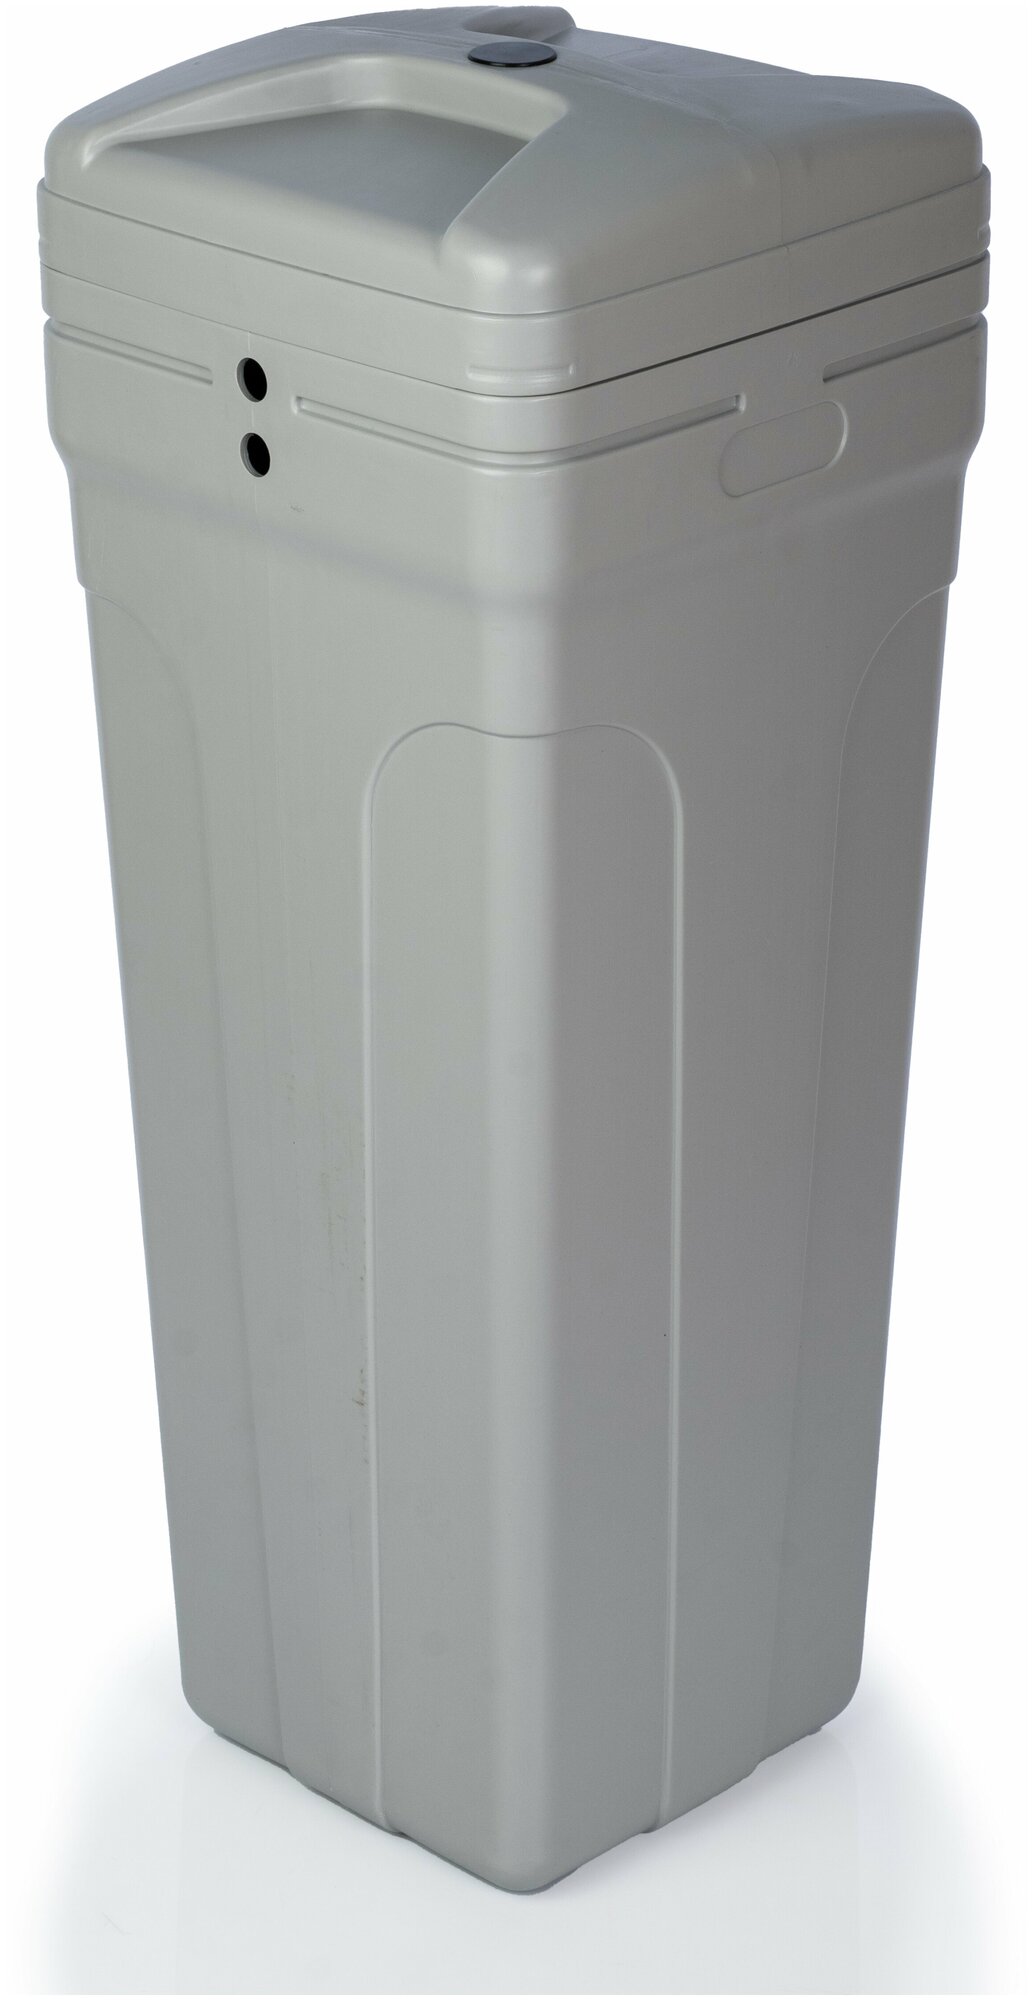 Система очистки воды из скважины Water-Pro AV 1252 RunXin F117Q3 под загрузку 1800 л/ч, фильтр колонного типа, умягчитель воды для дома, 14.5 кг - фотография № 8